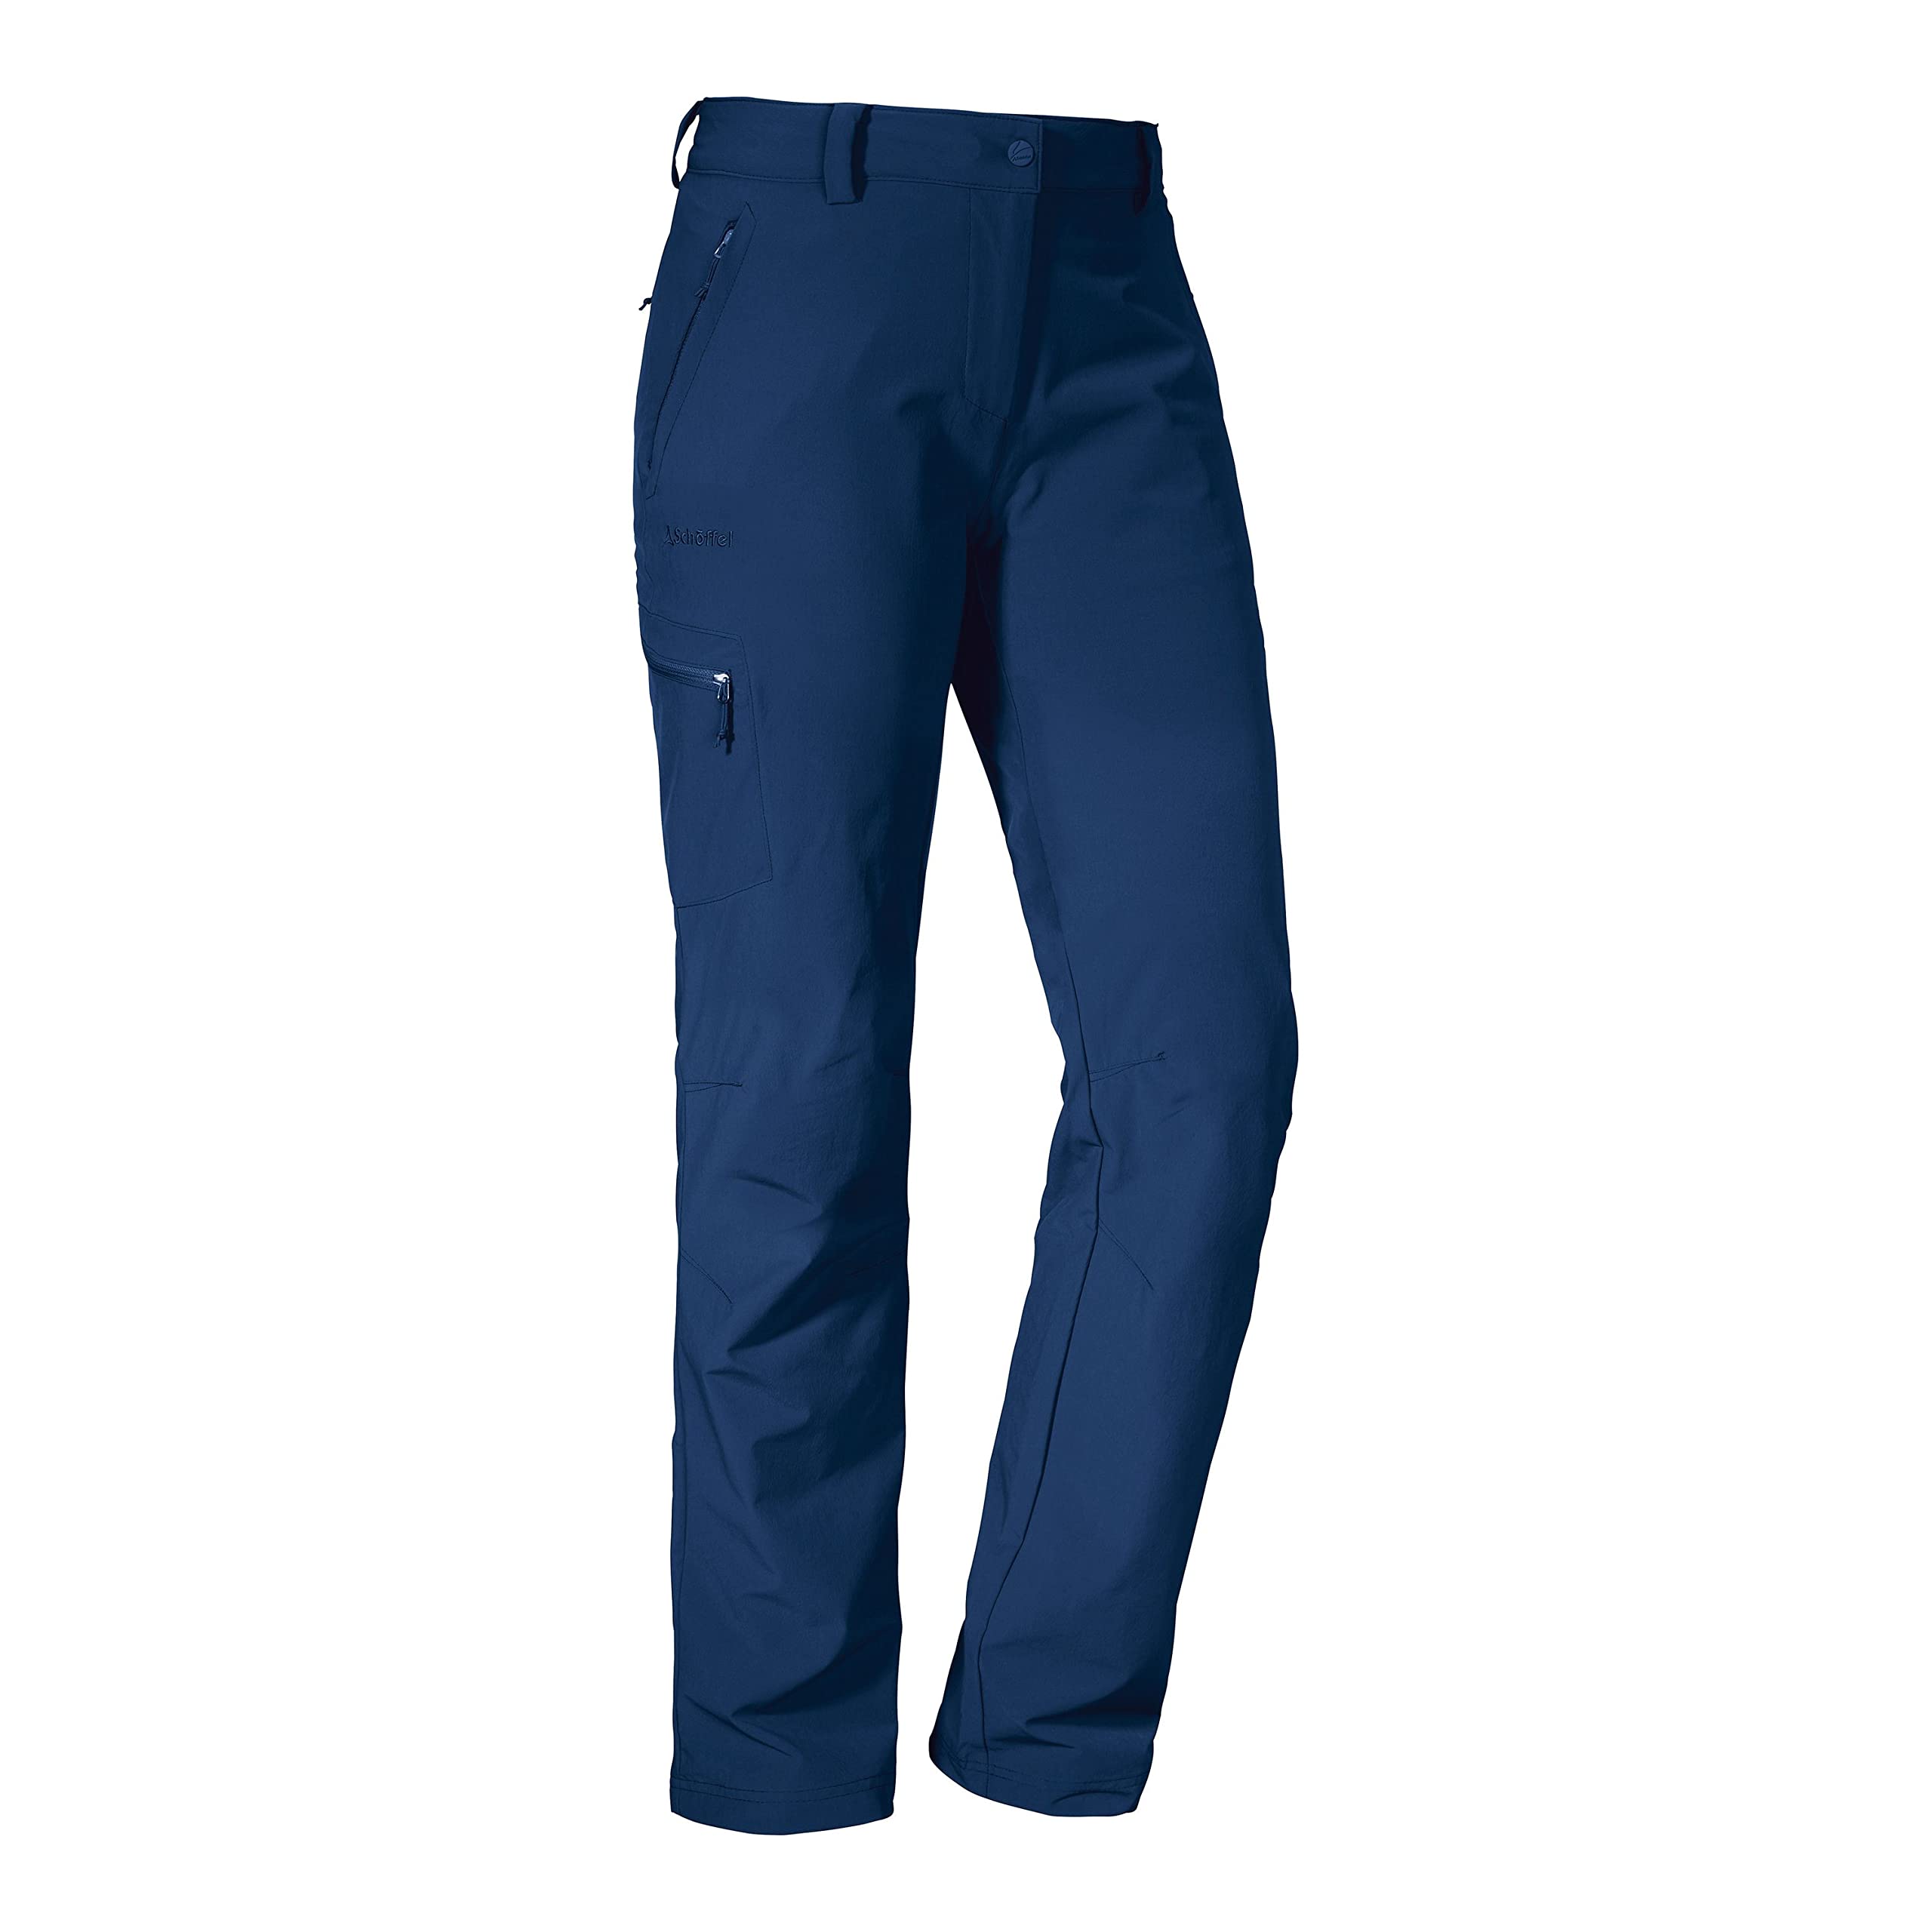 Schöffel Damen Pants Ascona, leichte und komfortable Wanderhose für Frauen, vielseitige Outdoor Hose mit optimaler Passform und praktischen Taschen, dress blues, 44